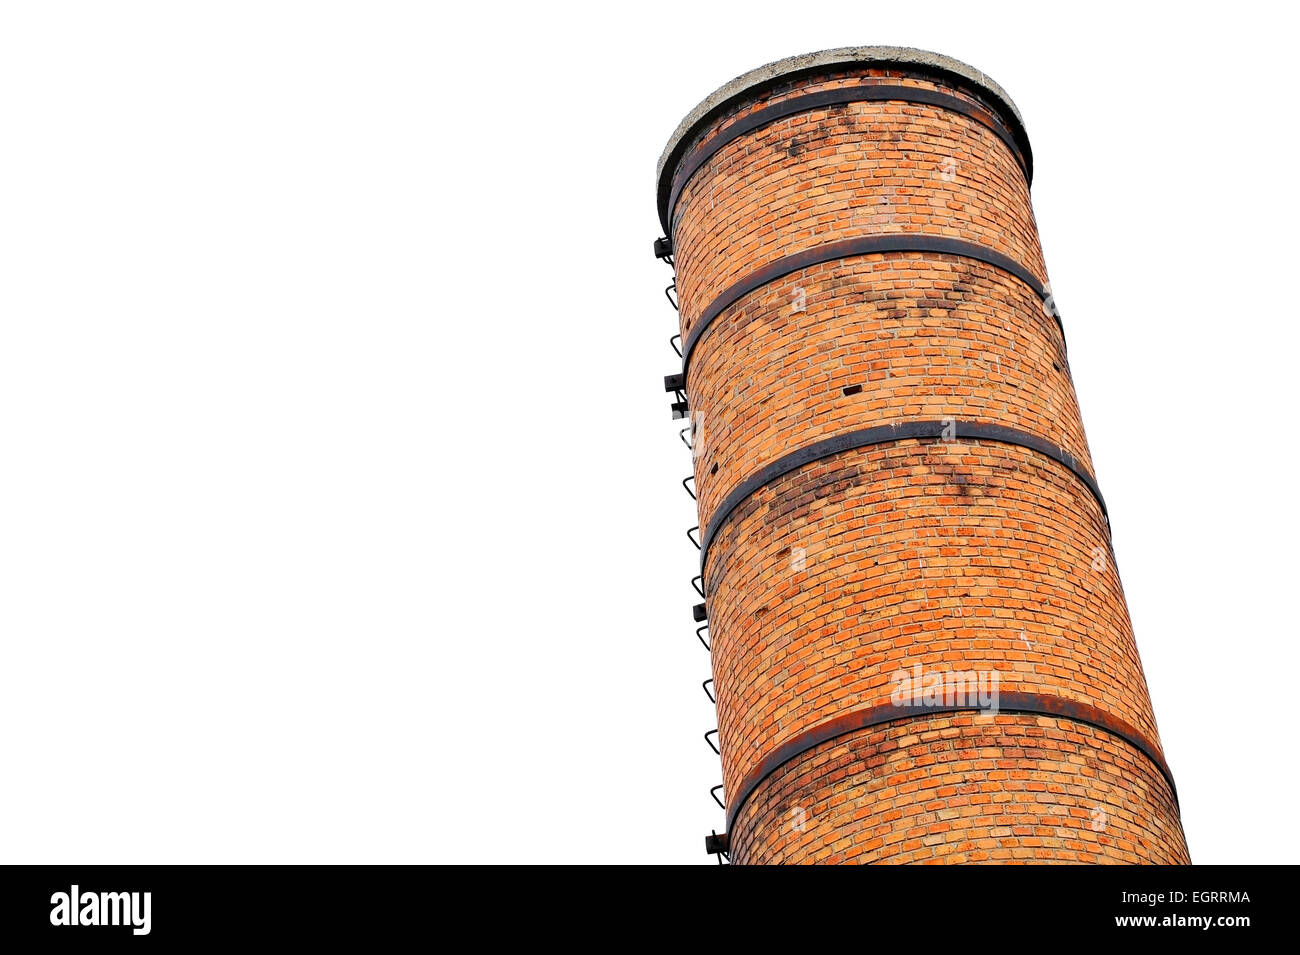 Architektur mit einer alten industriellen Backsteinturm isoliert auf weißem Hintergrund gedreht Stockfoto